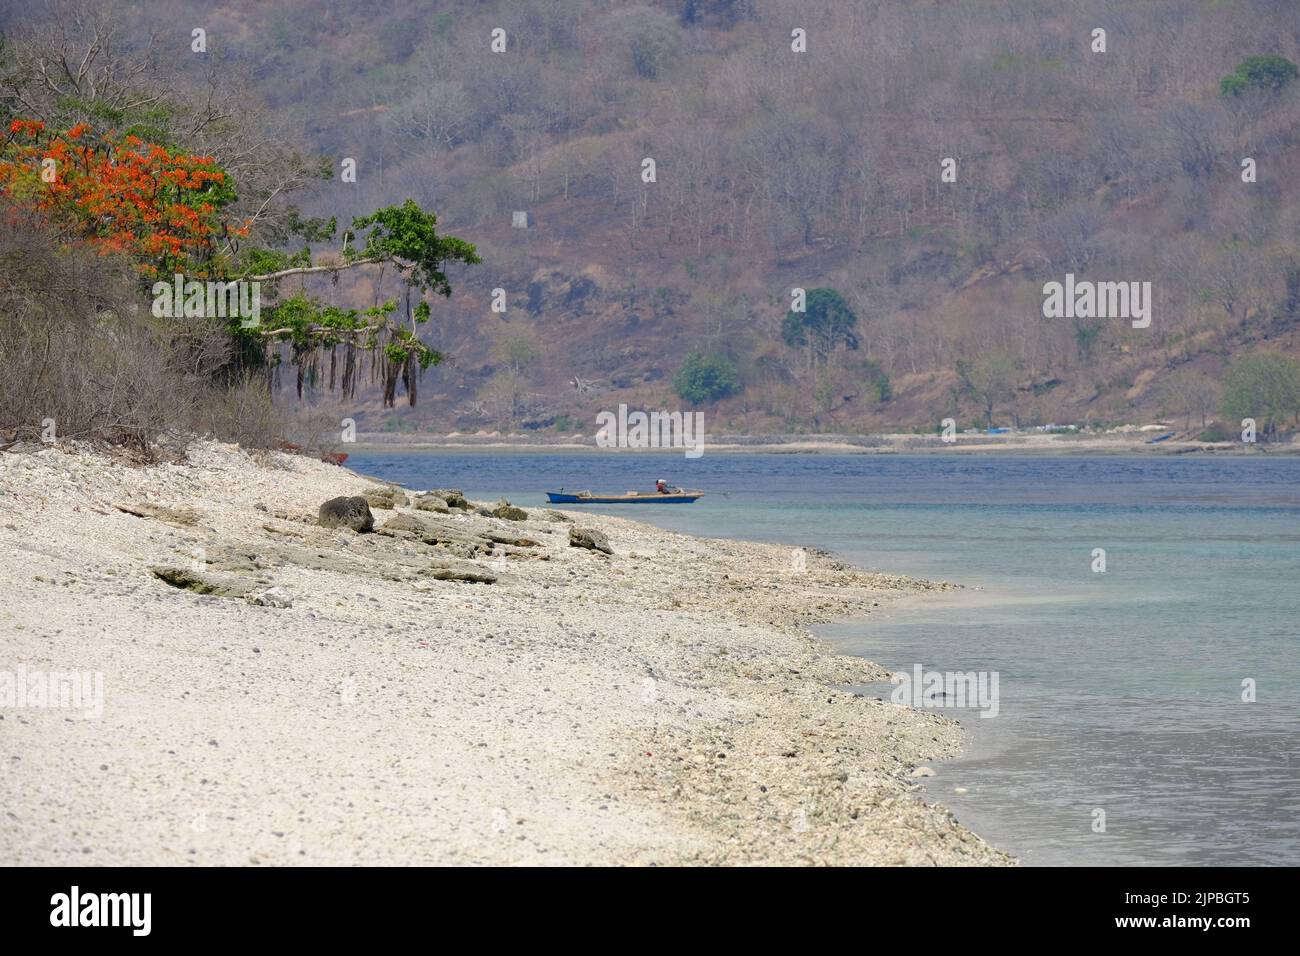 Indonesia Alor Island - vista al paisaje costero con playa Foto de stock